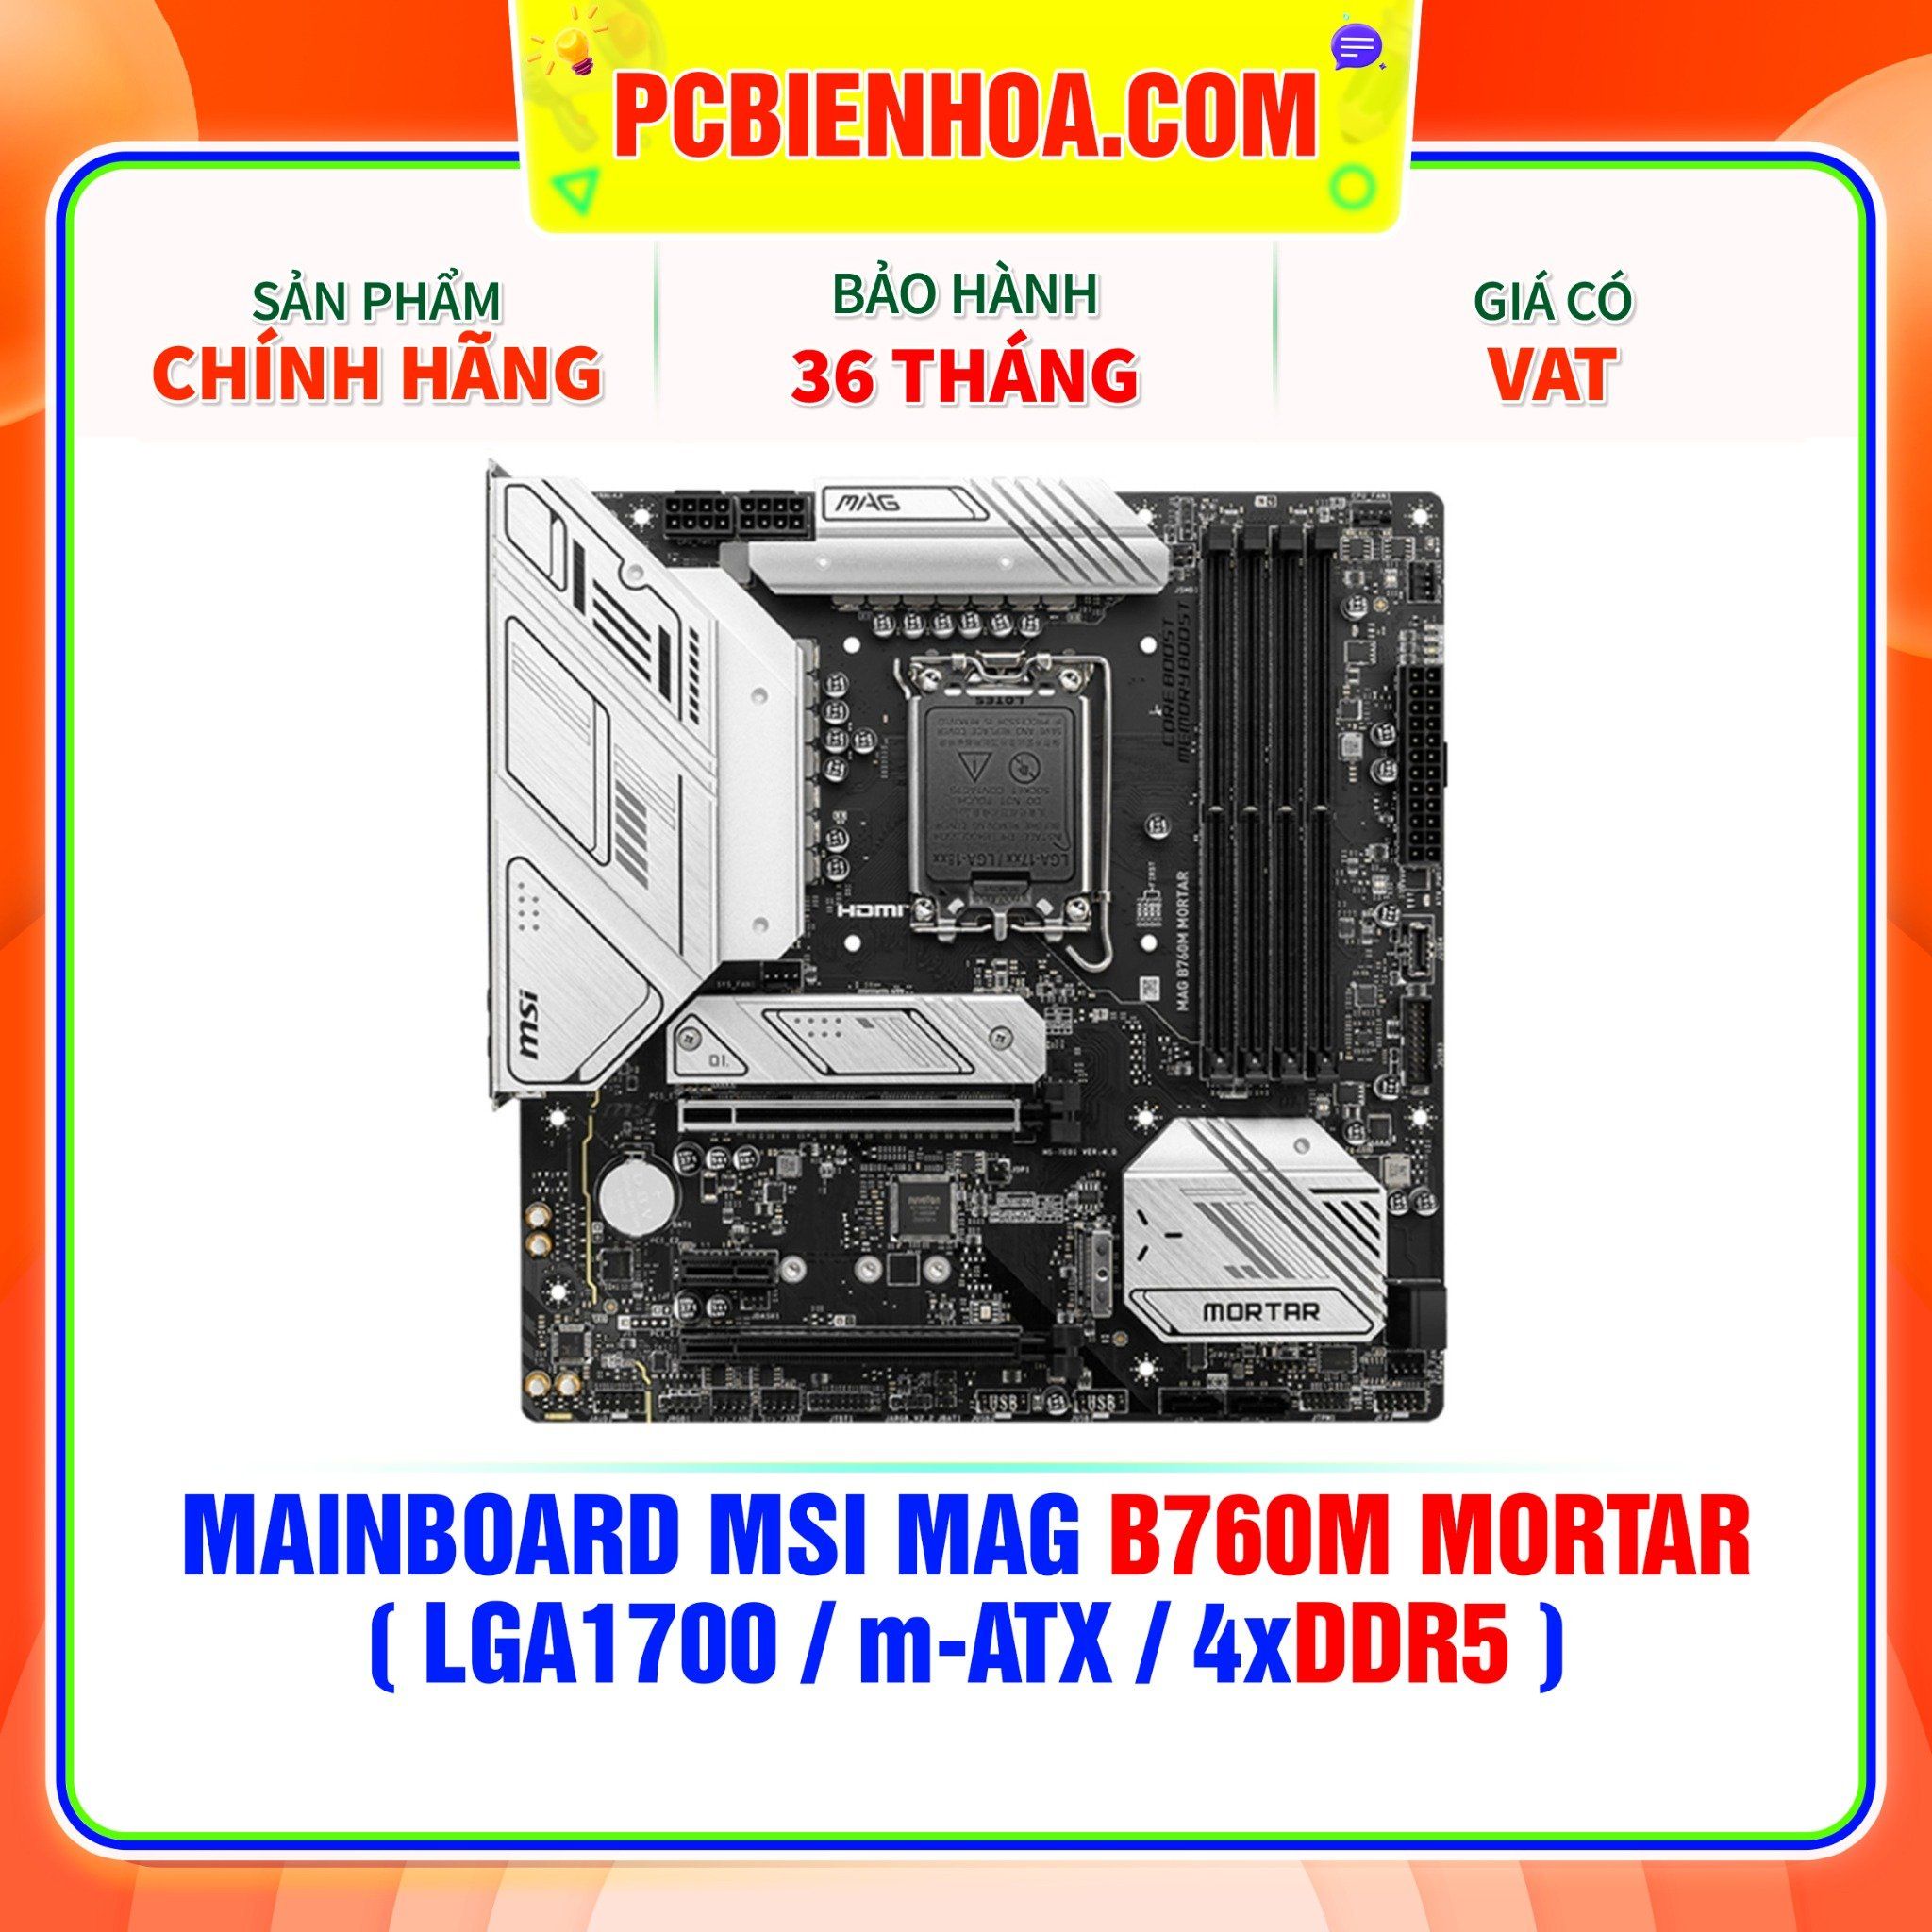  DDR5 - MAINBOARD MSI MAG B760M MORTAR ( LGA1700 / m-ATX / 4xDDR5 ) 